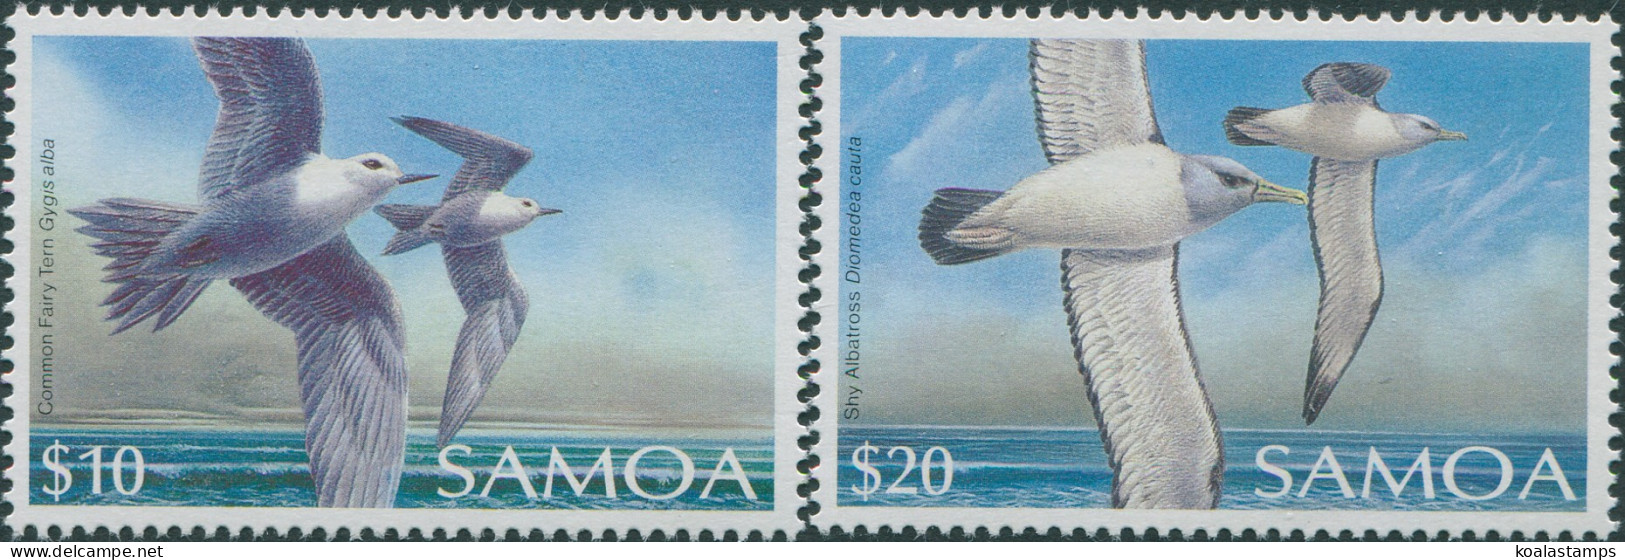 Samoa 1988 SG802-803 Bird Set MNH - Samoa (Staat)